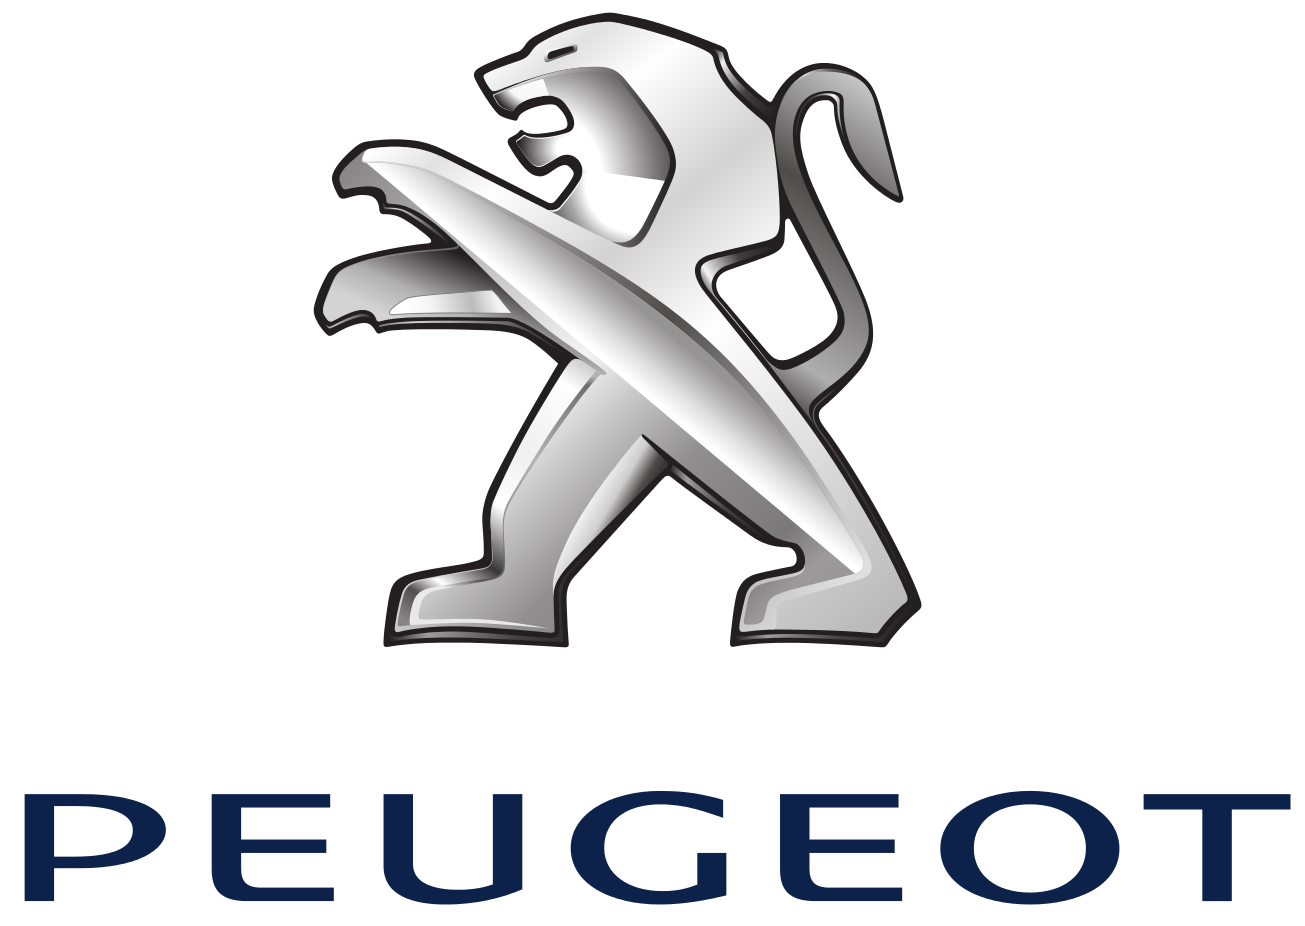 Peugeot-logo-e1611076134213